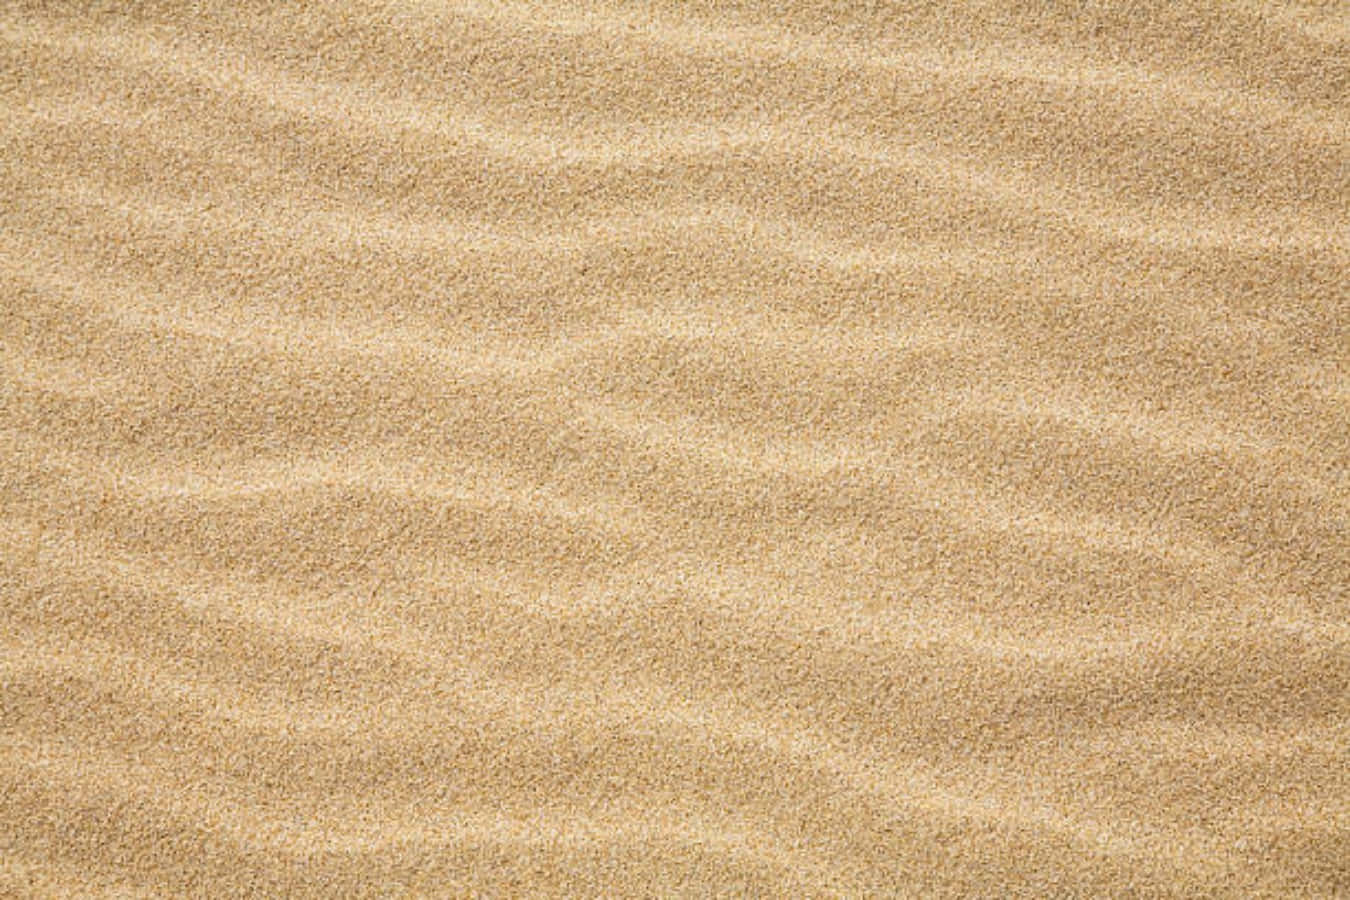 Vågigstrandbild Med Fin Sand.